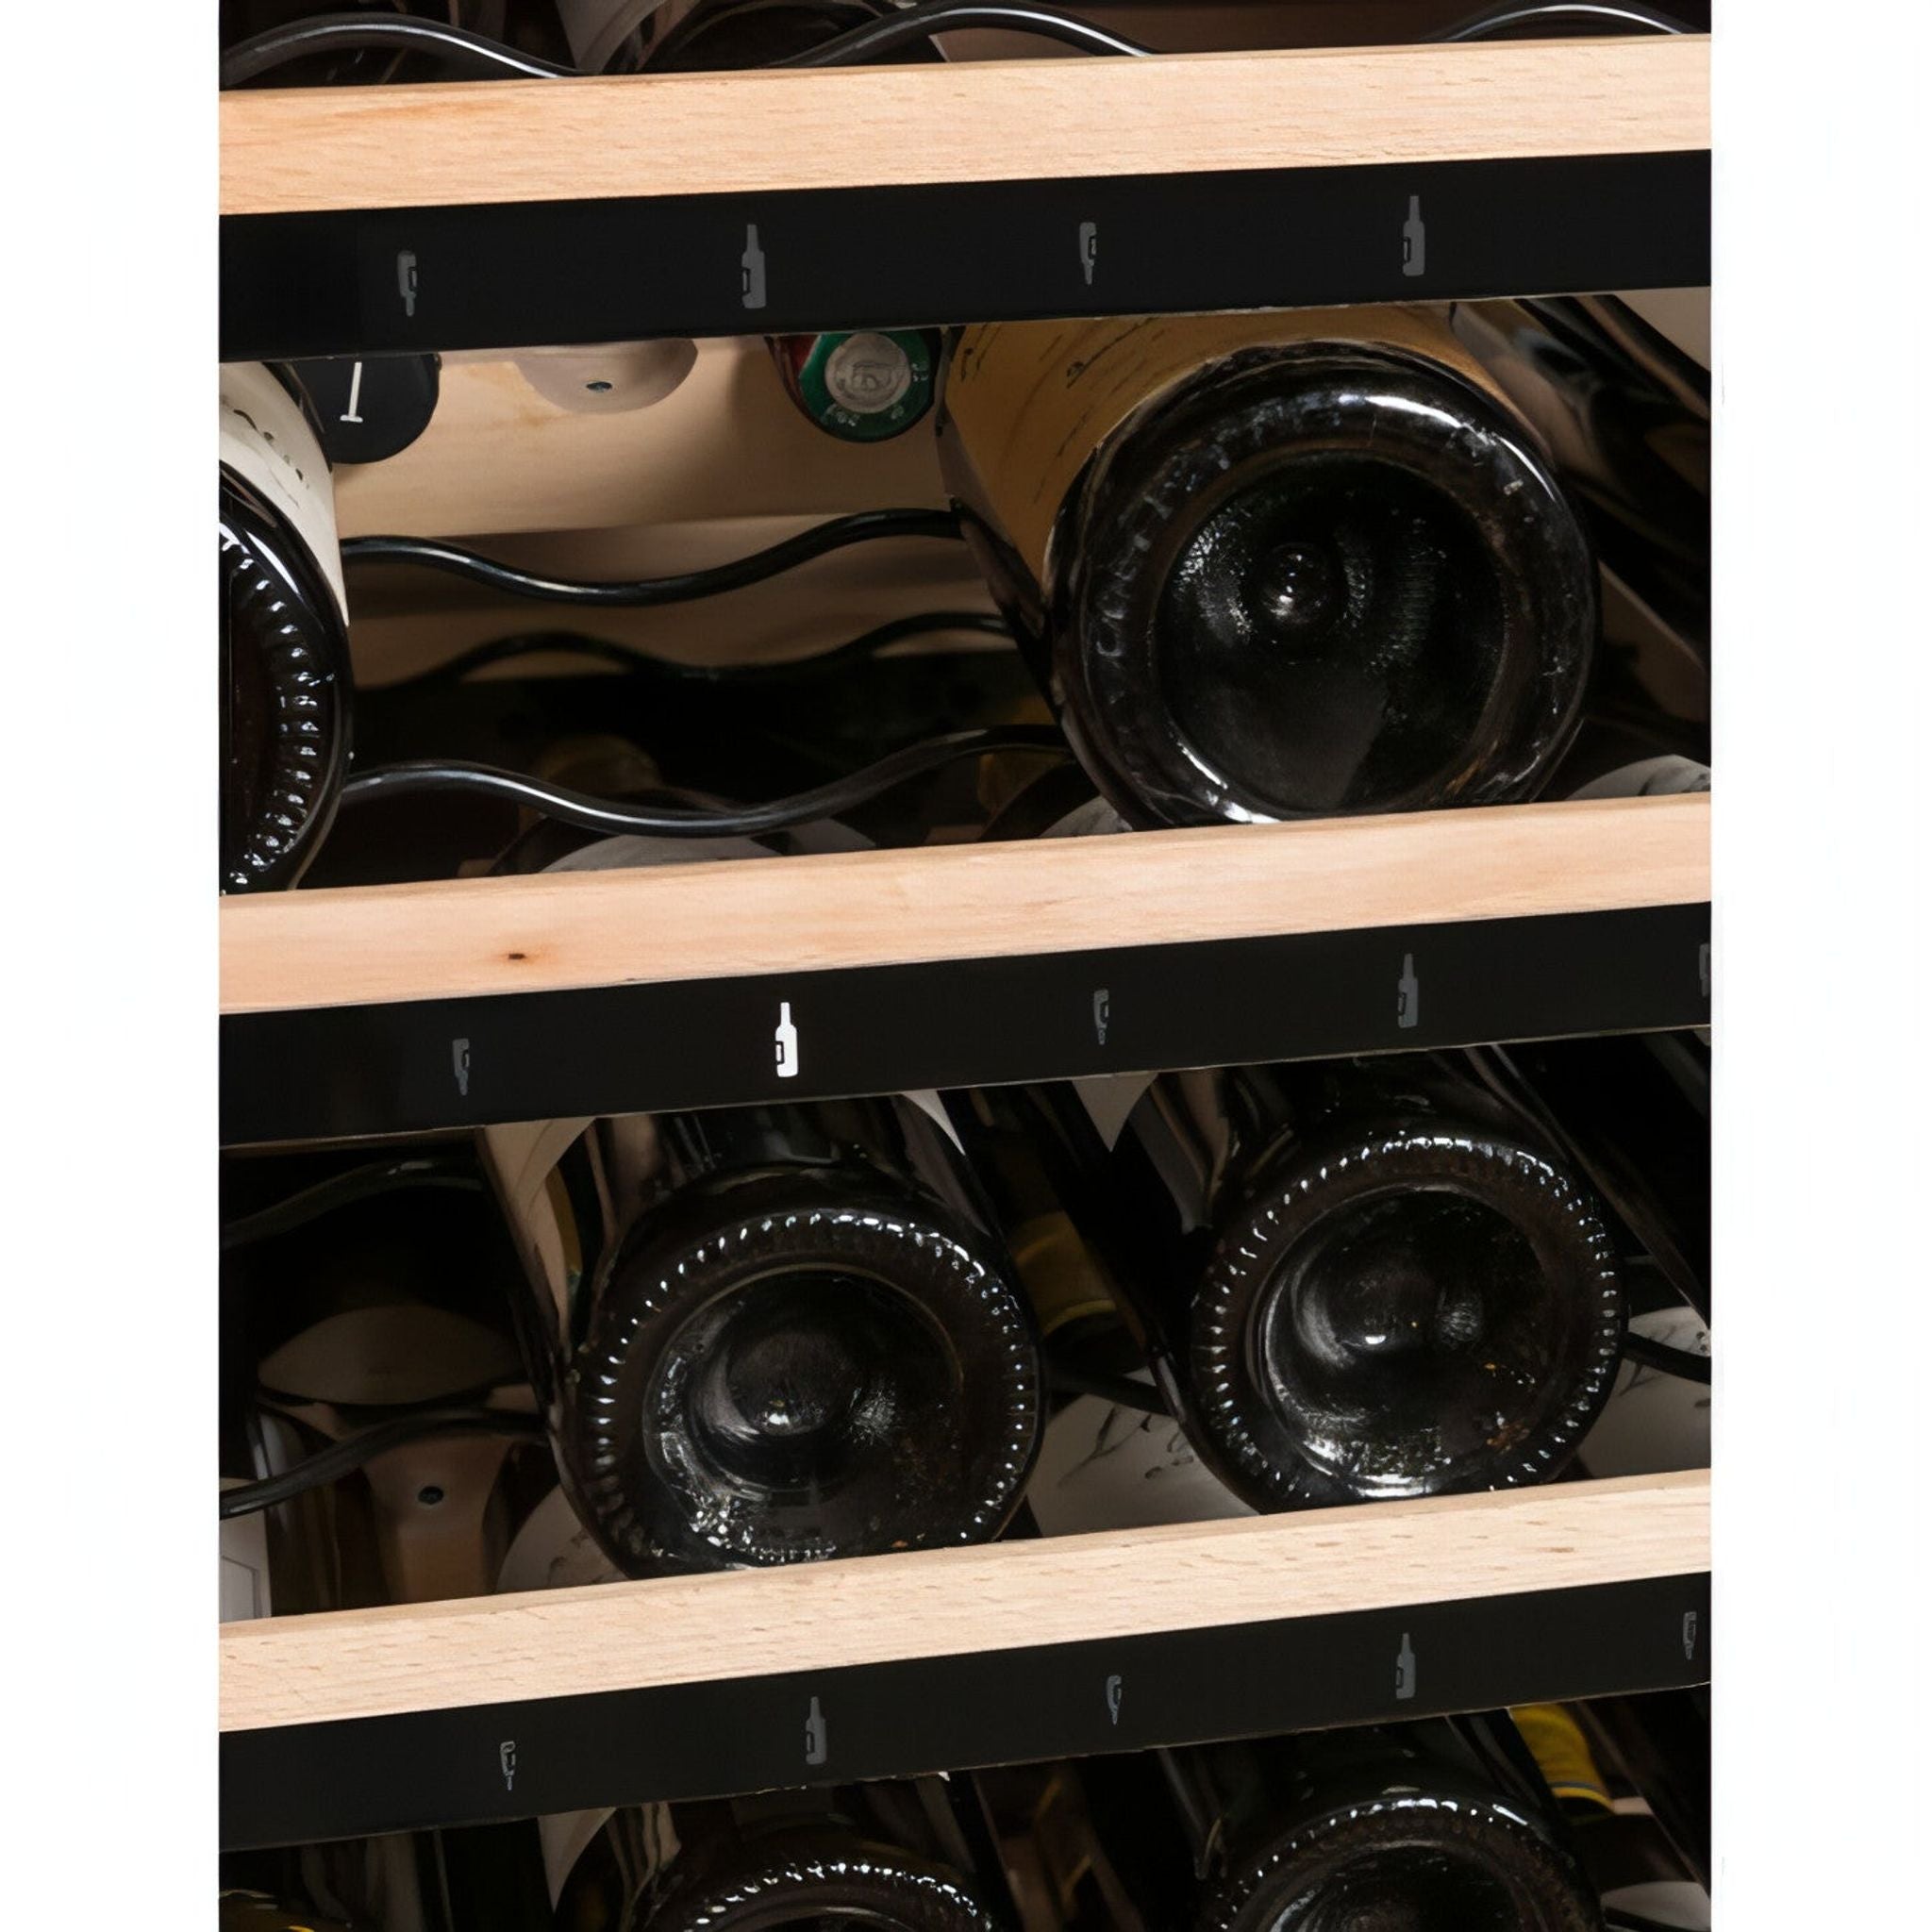 La Sommeliere - 185 Bottle Freestanding Multi Zone Wine Cabinet ECELLAR185